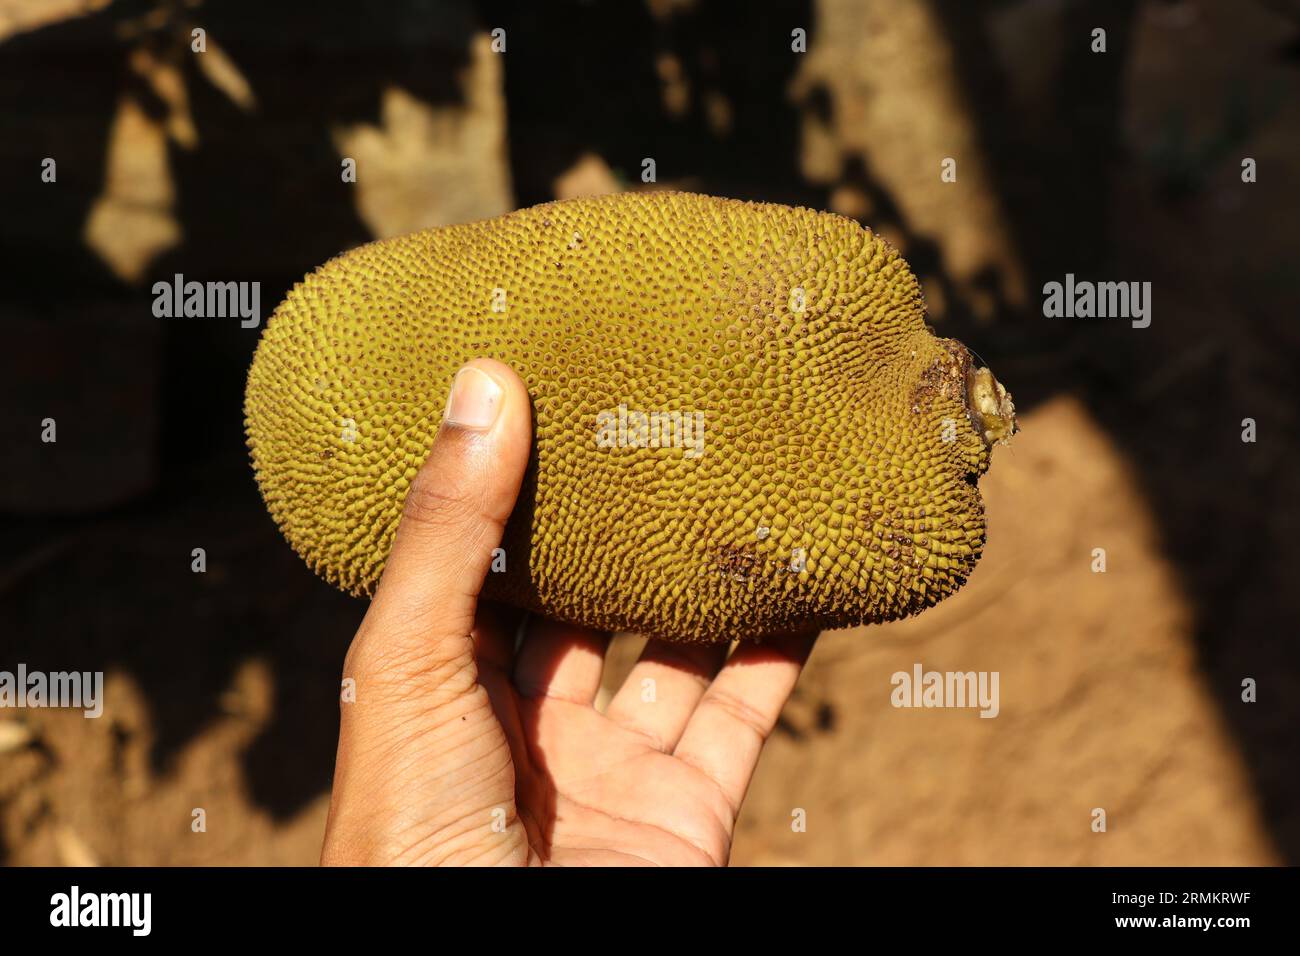 Jeune jackfruit tenu dans la main avec la lumière naturelle. Jack fruit est utilisé comme ingrédient dans les plats Banque D'Images